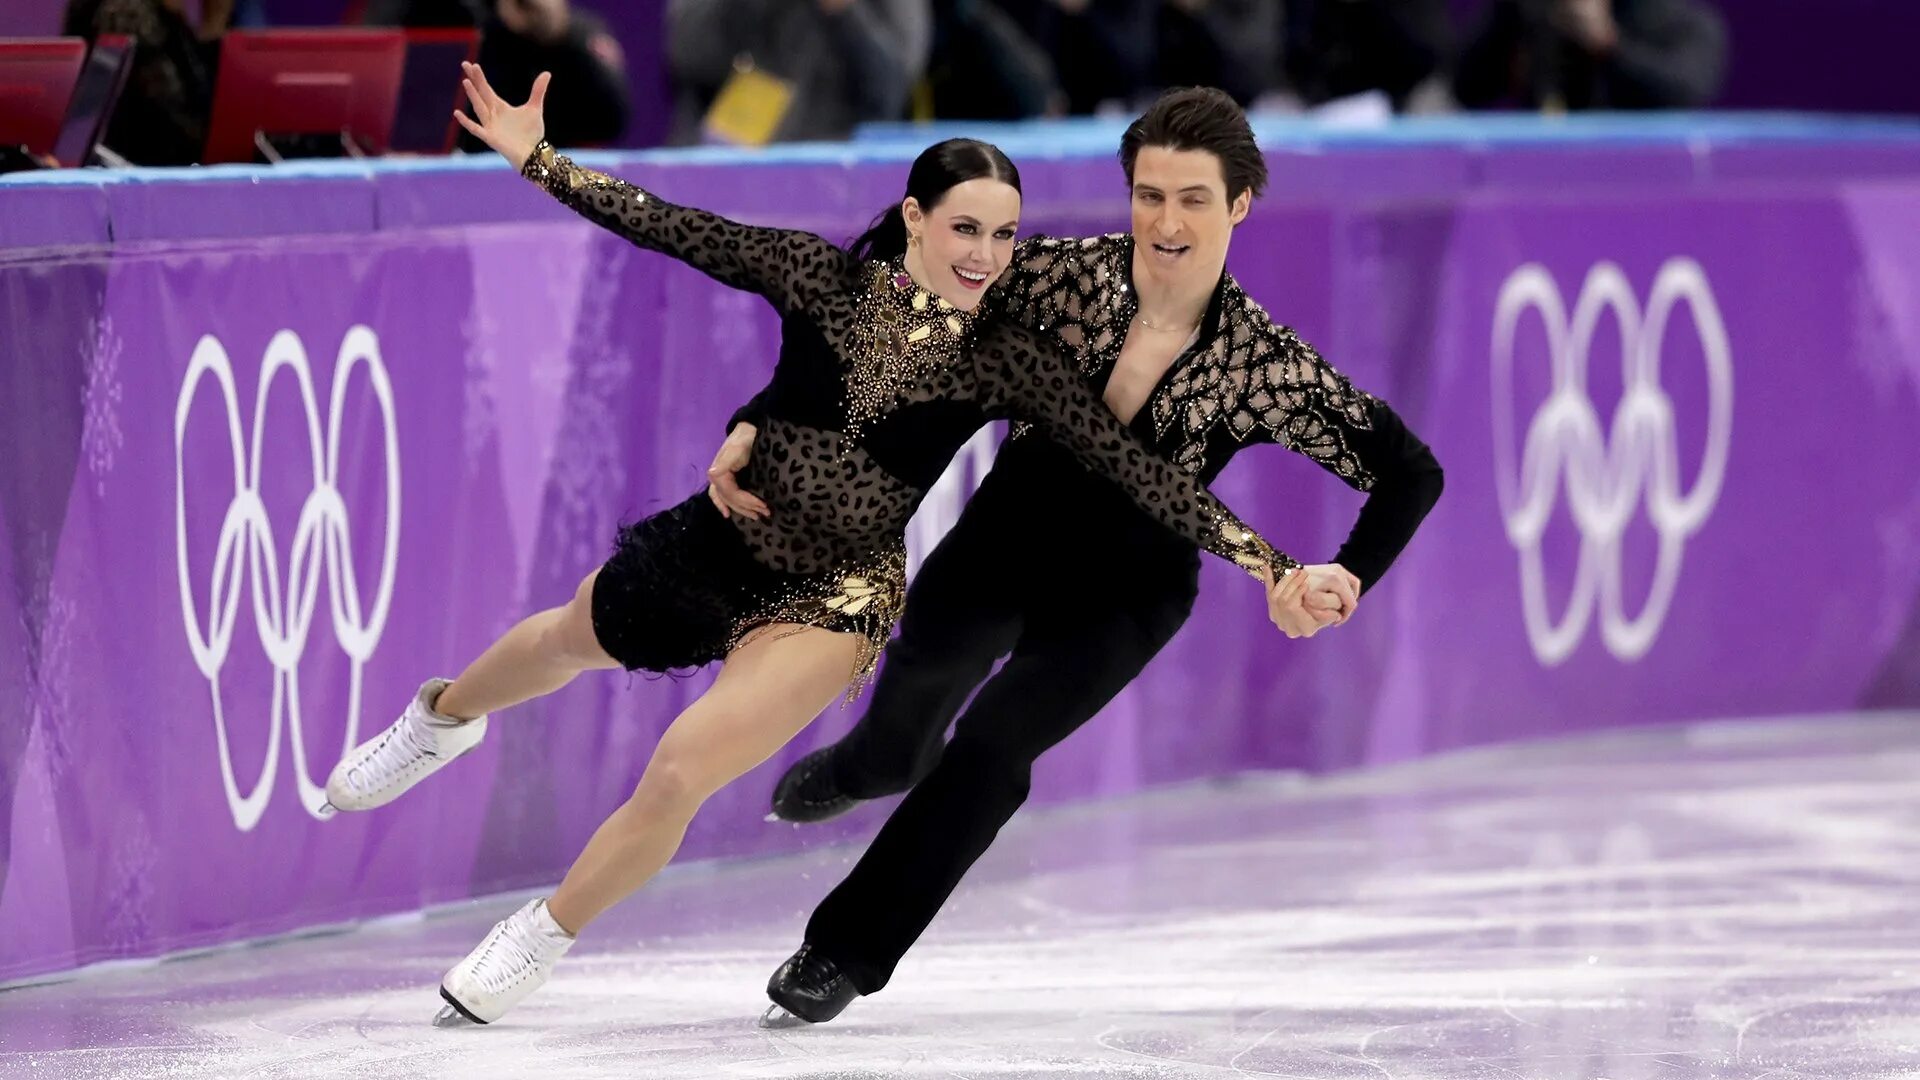 Тесса Вертью и Скотт Моир на Олимпиаде в Корее 2018. Тесса Виртью и Скотт Мойр Гран при Канада. Игры катания на льду